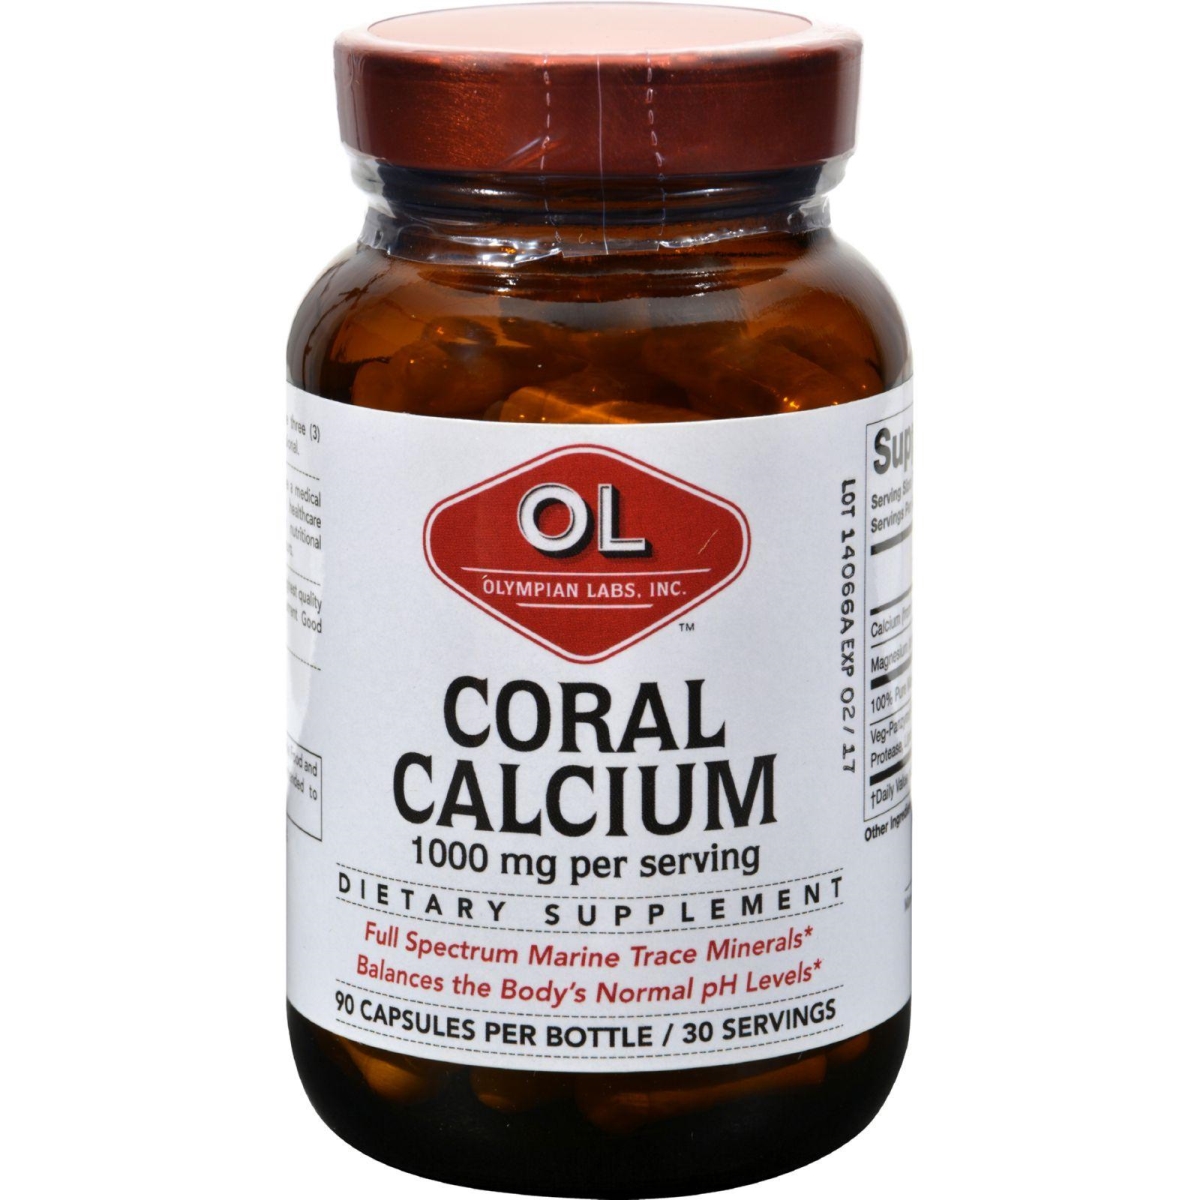 Hg0382143 1 G Coral Calcium - 90 Capsules